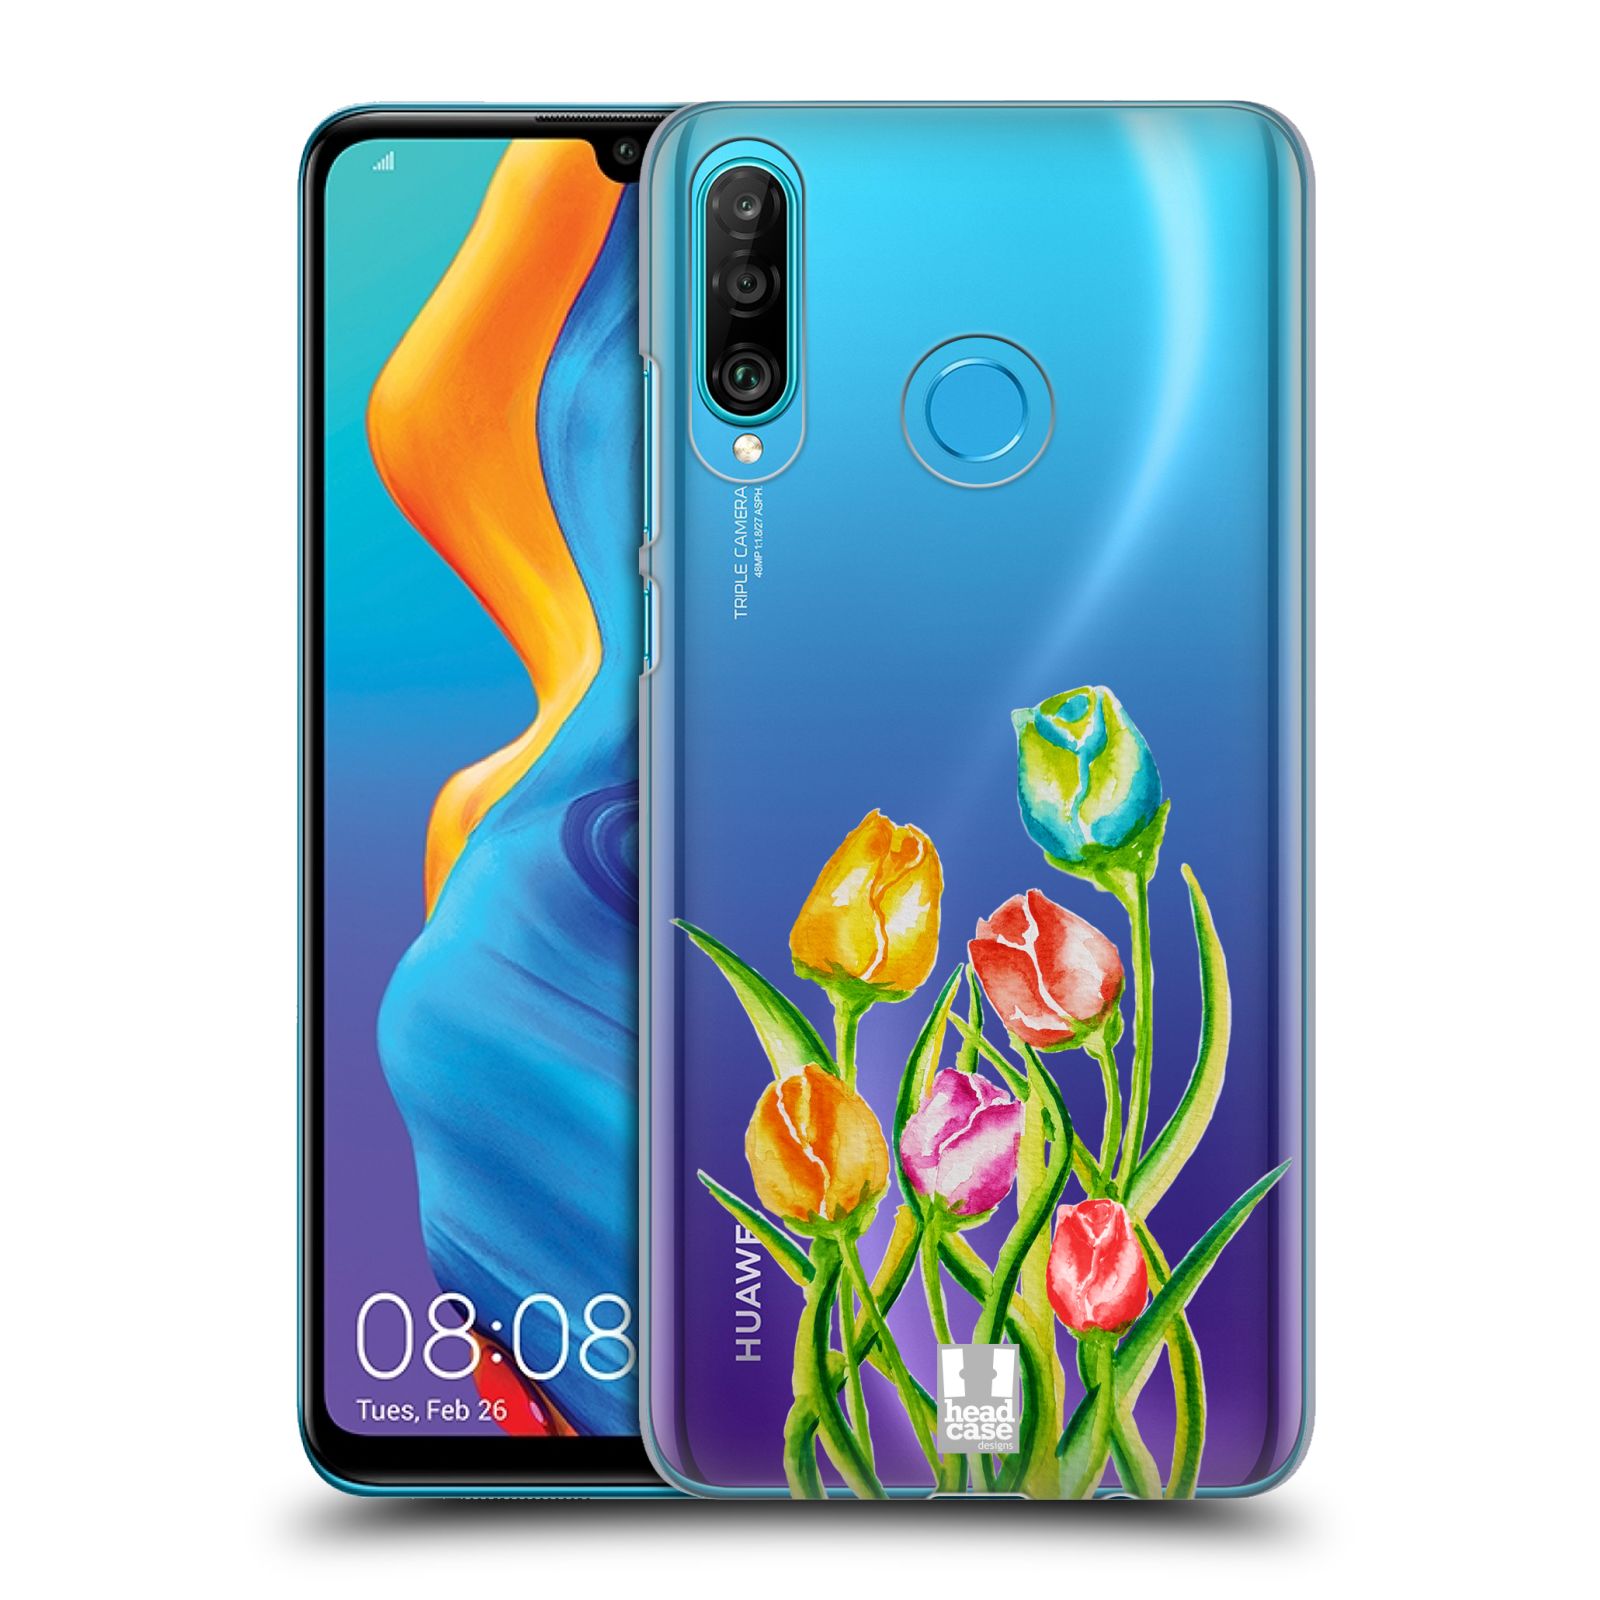 Pouzdro na mobil Huawei P30 LITE - HEAD CASE - Květina Tulipán vodní barvy